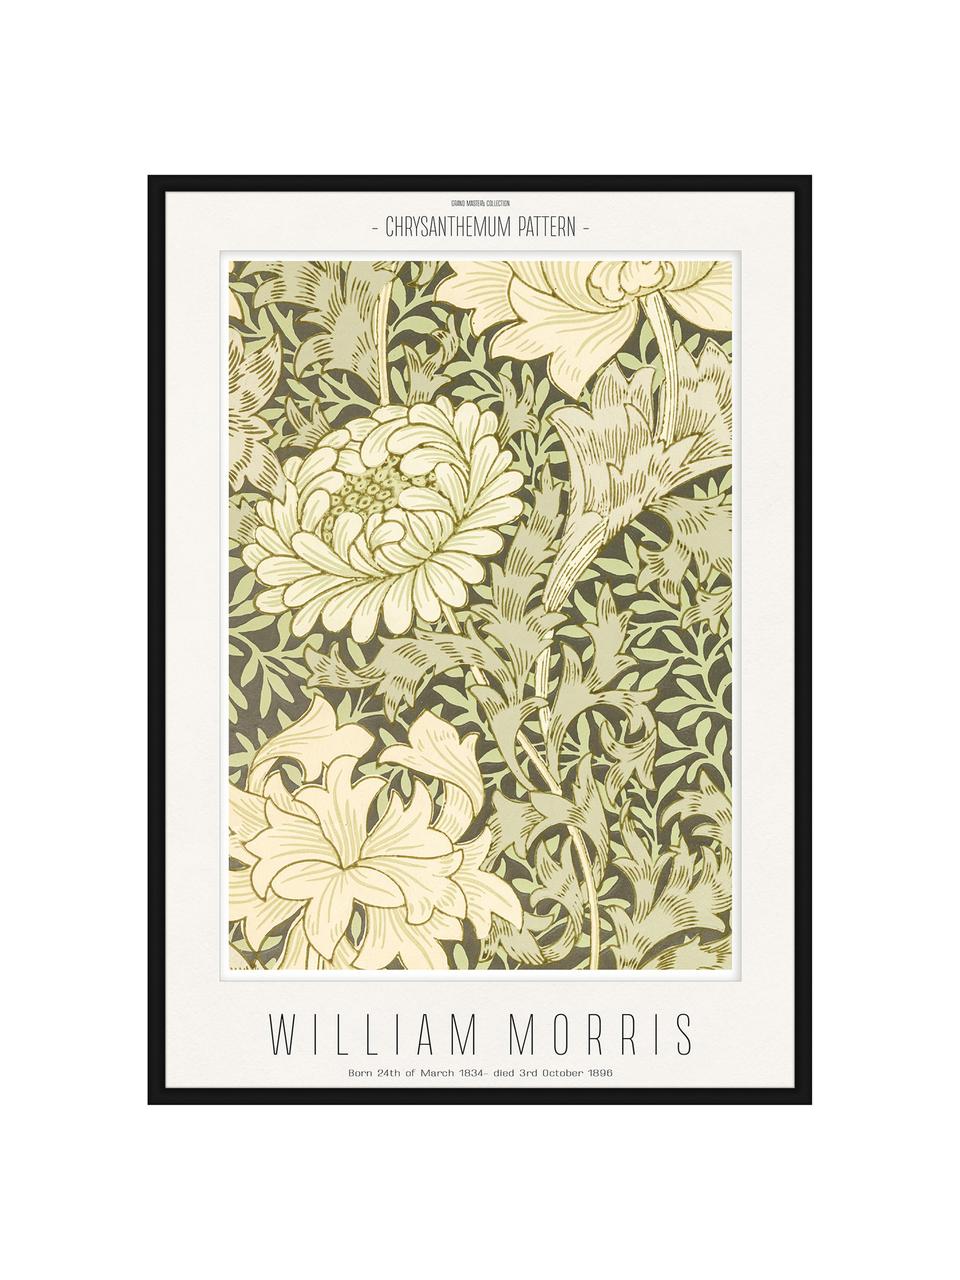 Gerahmter Digitaldruck Chrysantemum - William Morris, Bild: Digitaldruck auf Papier, Rahmen: Holz, Mitteldichte Holzfa, Front: Glas, Beige, Grün, B 32 x H 42 cm